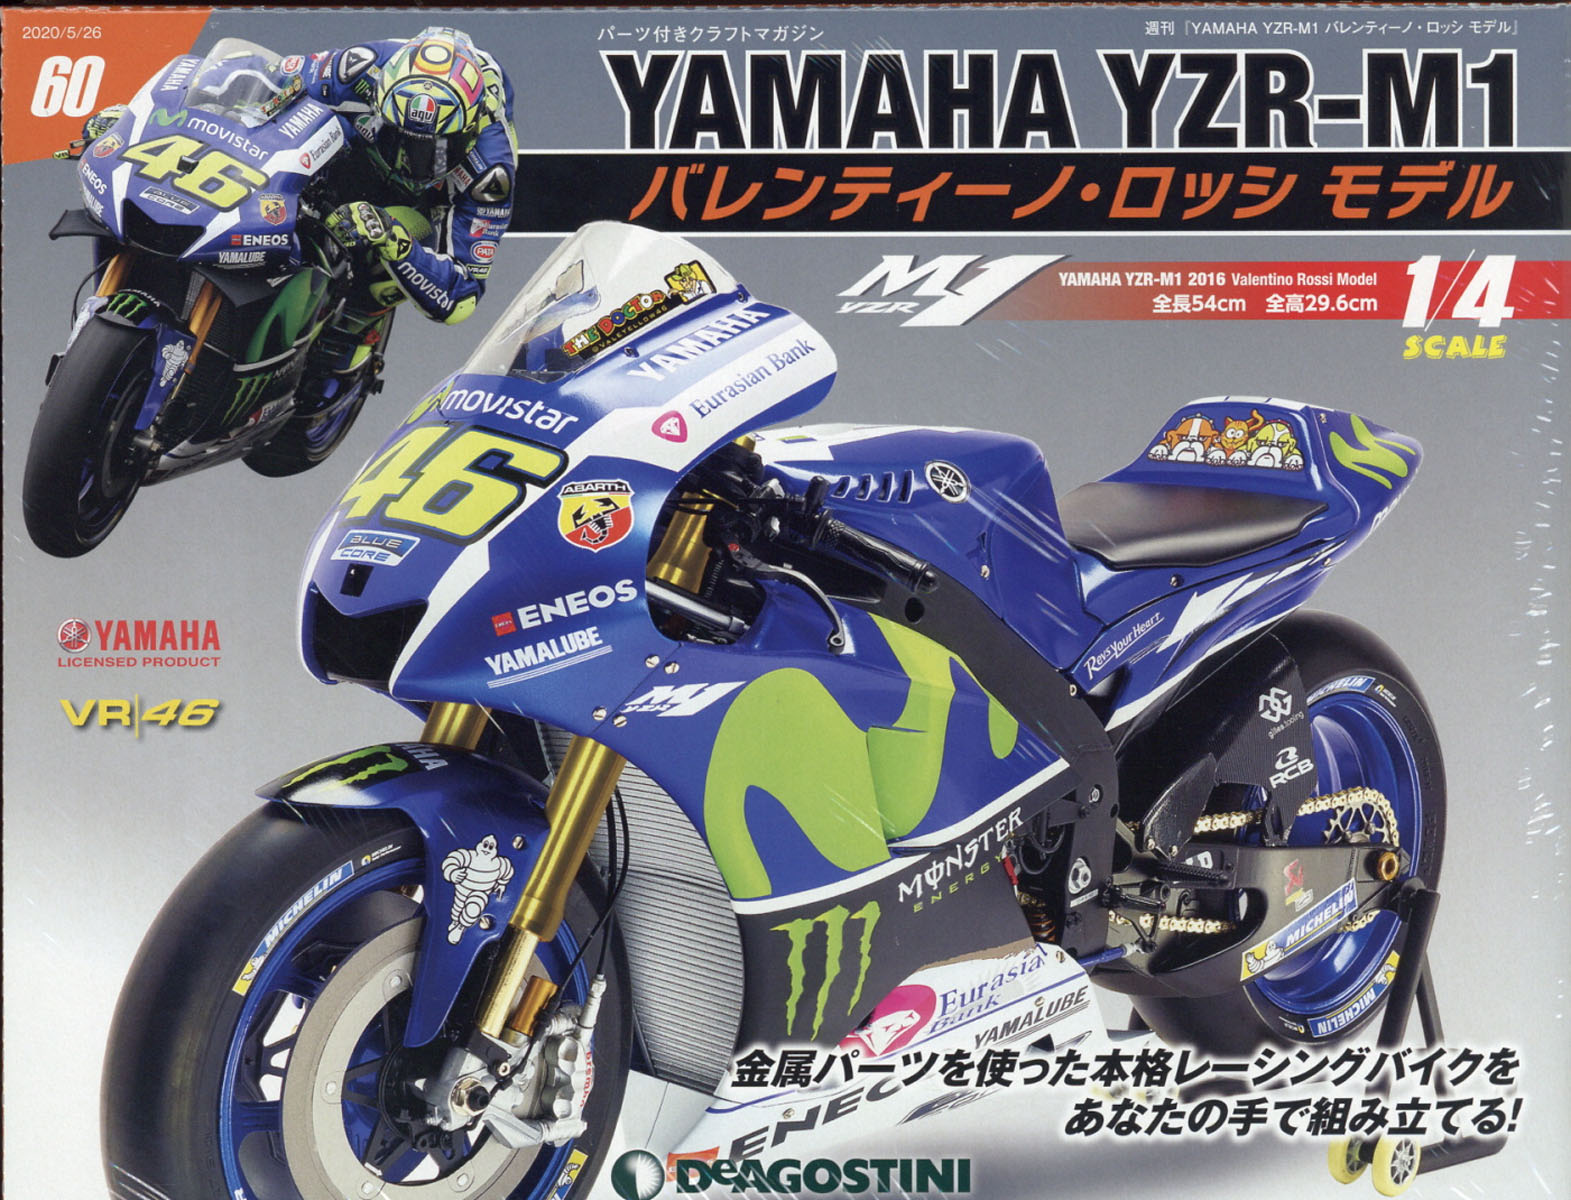 週刊 YAMAHA YZR-1 バレンティーノ・ロッシ モデル 2020年 5/26号 [雑誌]